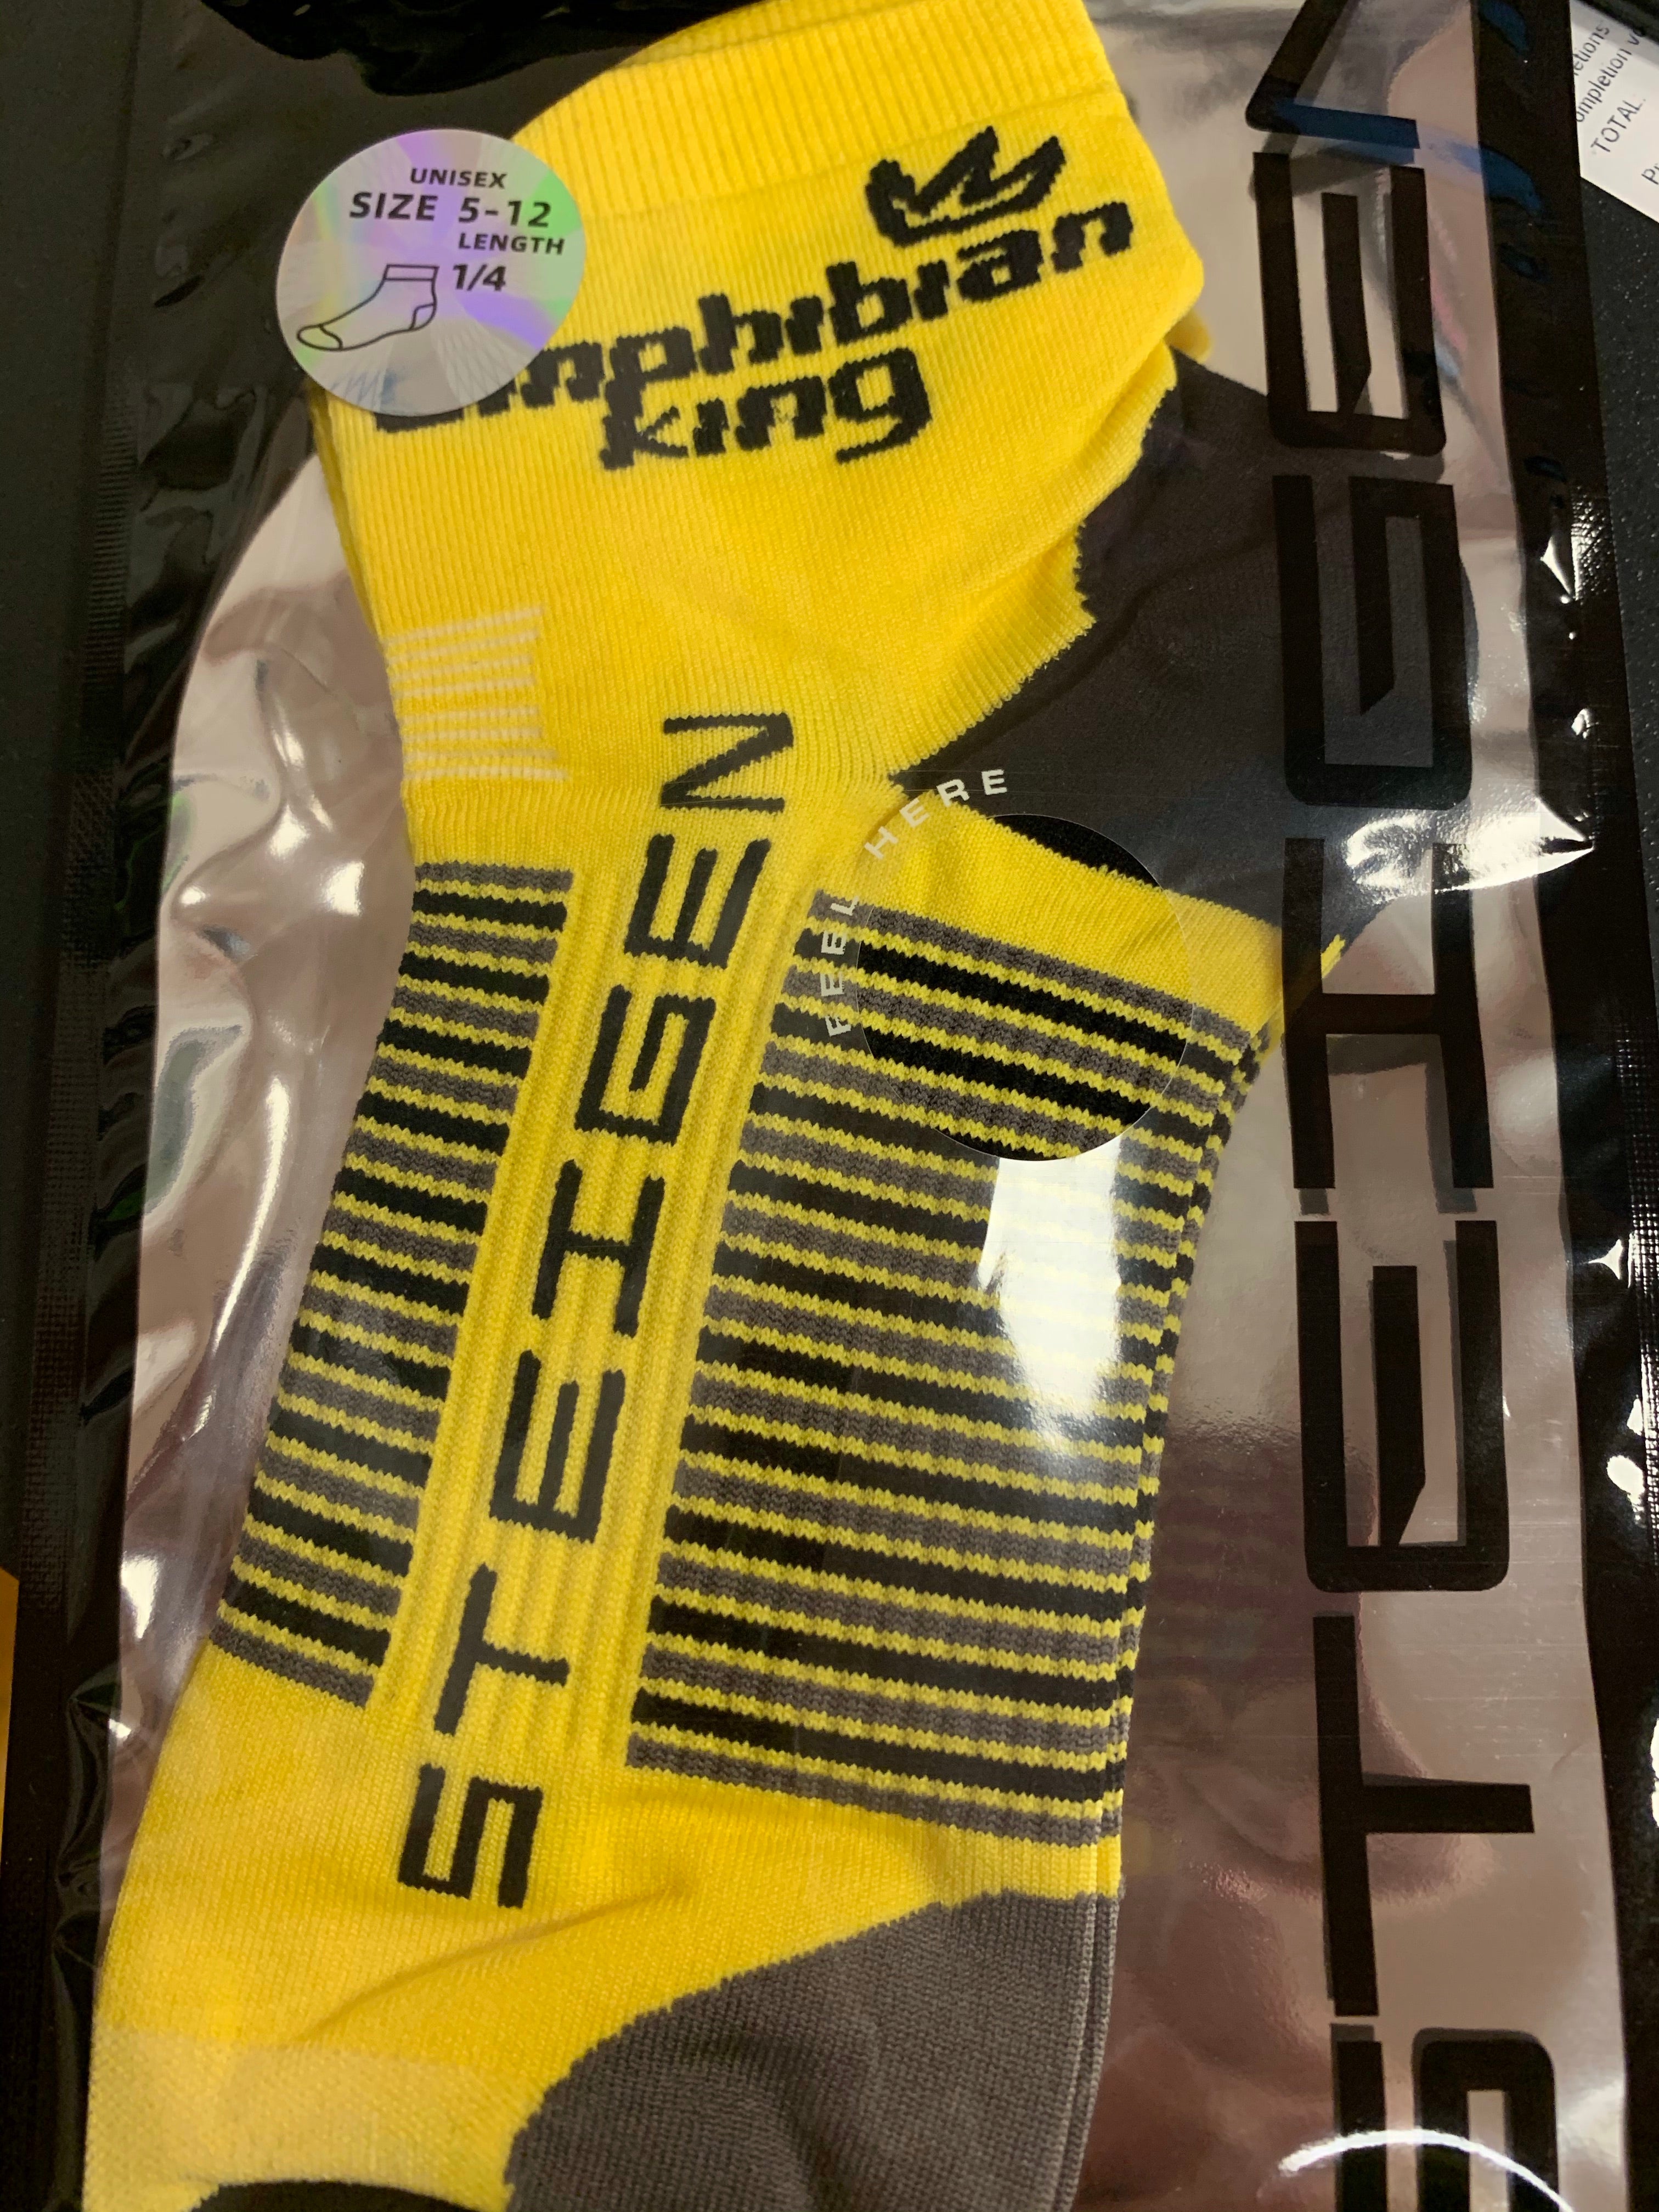 Steigen 1/4 Length Socks Unisex